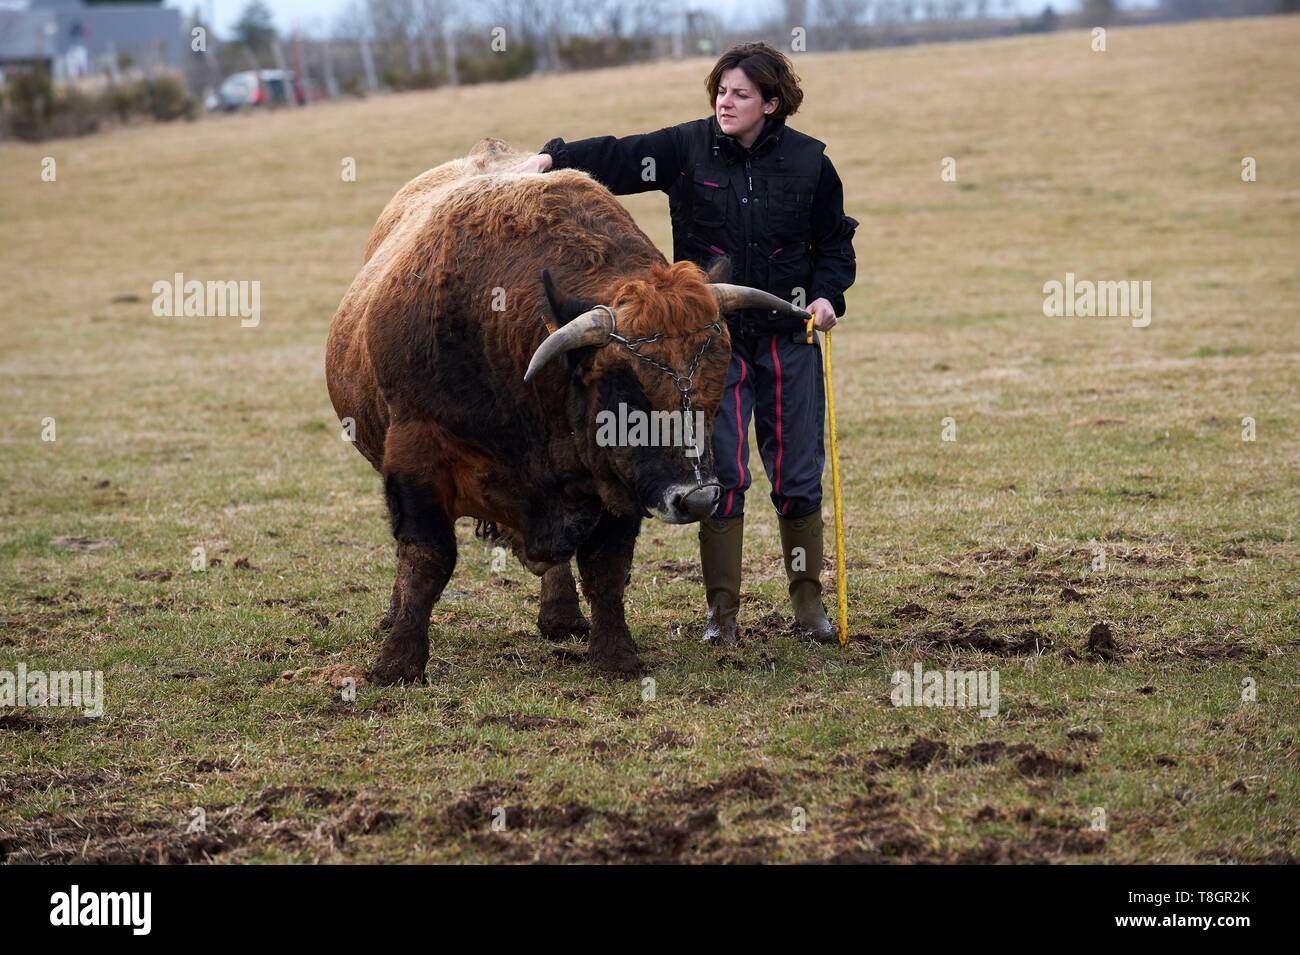 France, Aveyron, Laguiole, Celine Batut, breeder of the Aubrac cow, Aubrac bull Stock Photo